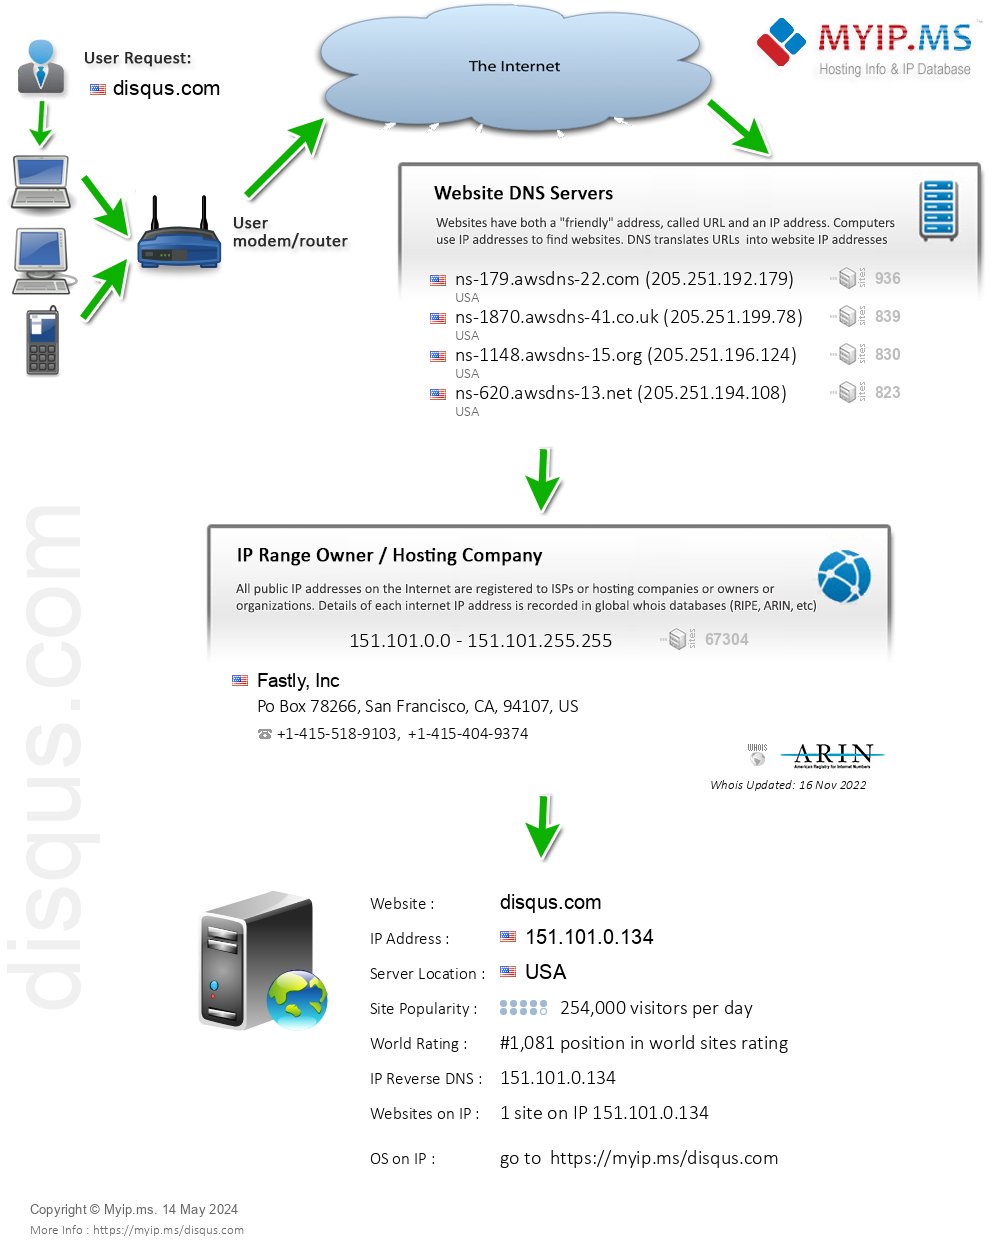 Disqus.com - Website Hosting Visual IP Diagram